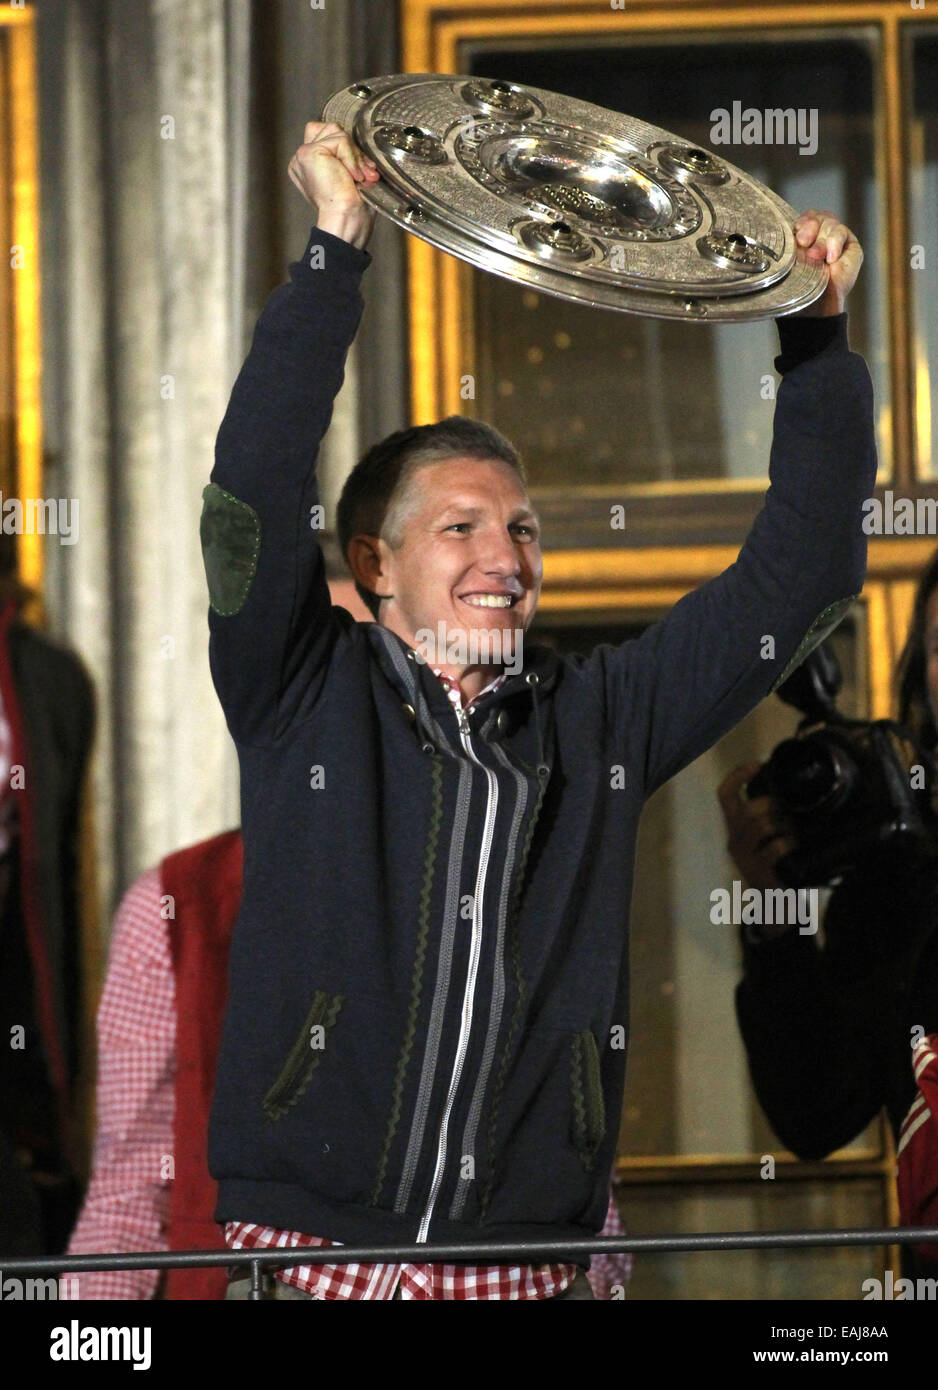 Bastian Schweinsteiger célébrant le FC Bayern München gagner la Ligue des champions à l'Hôtel de Ville. Bastian Schweinsteiger comprend : où : Munich, Allemagne Quand : 10 mai 2014 Banque D'Images